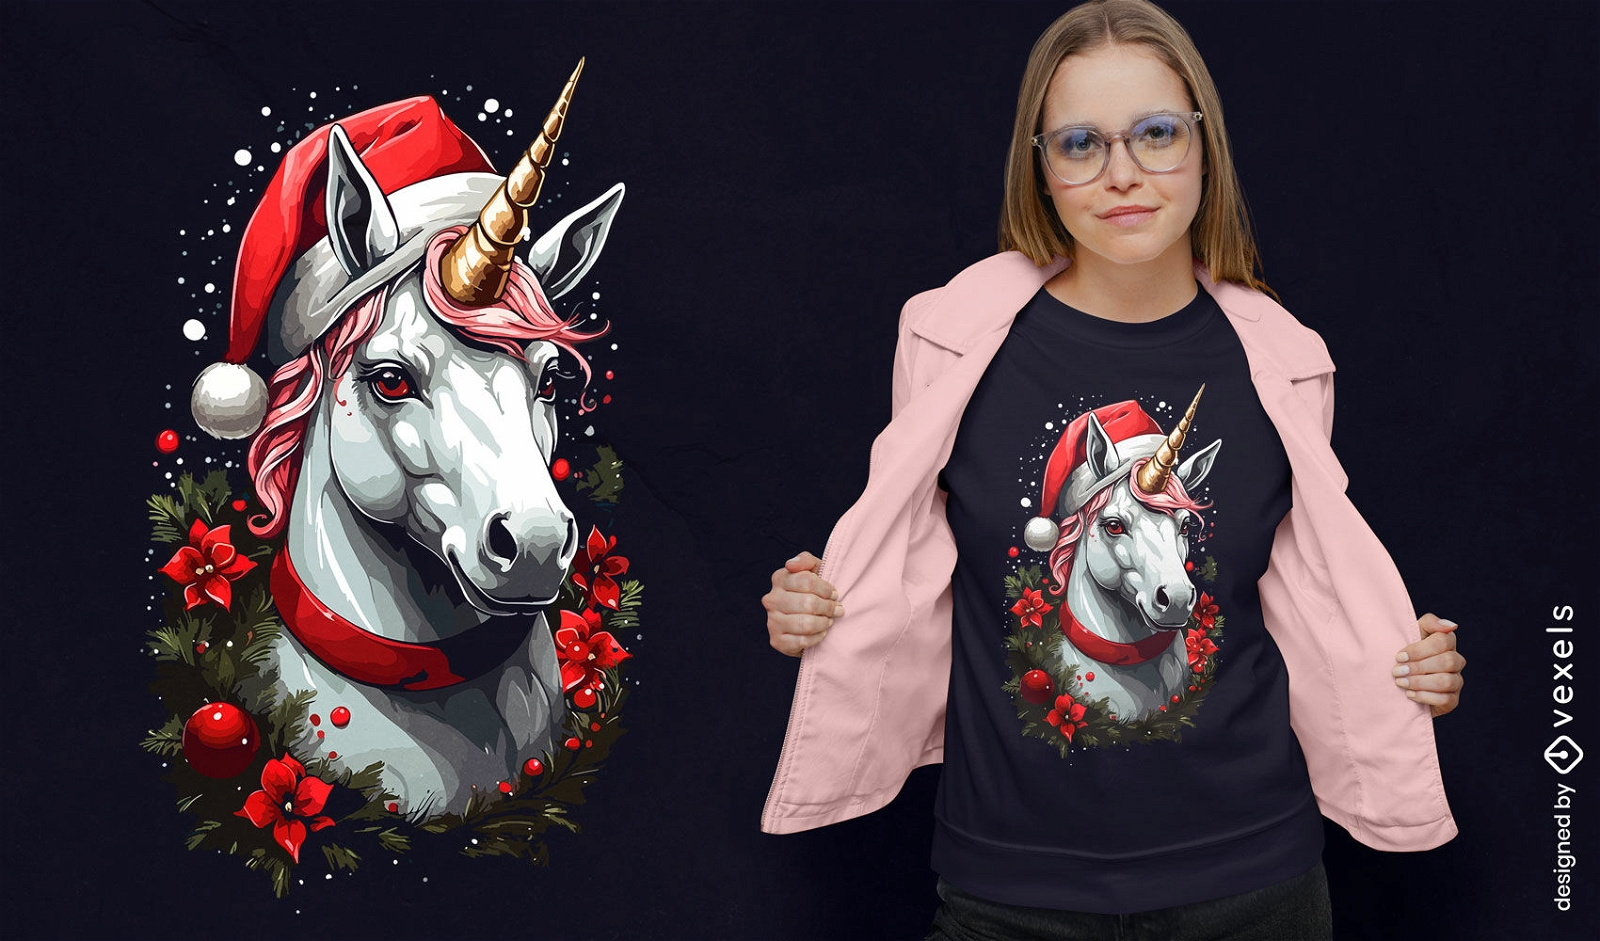 Dise?o de camiseta de unicornio con gorro navide?o.